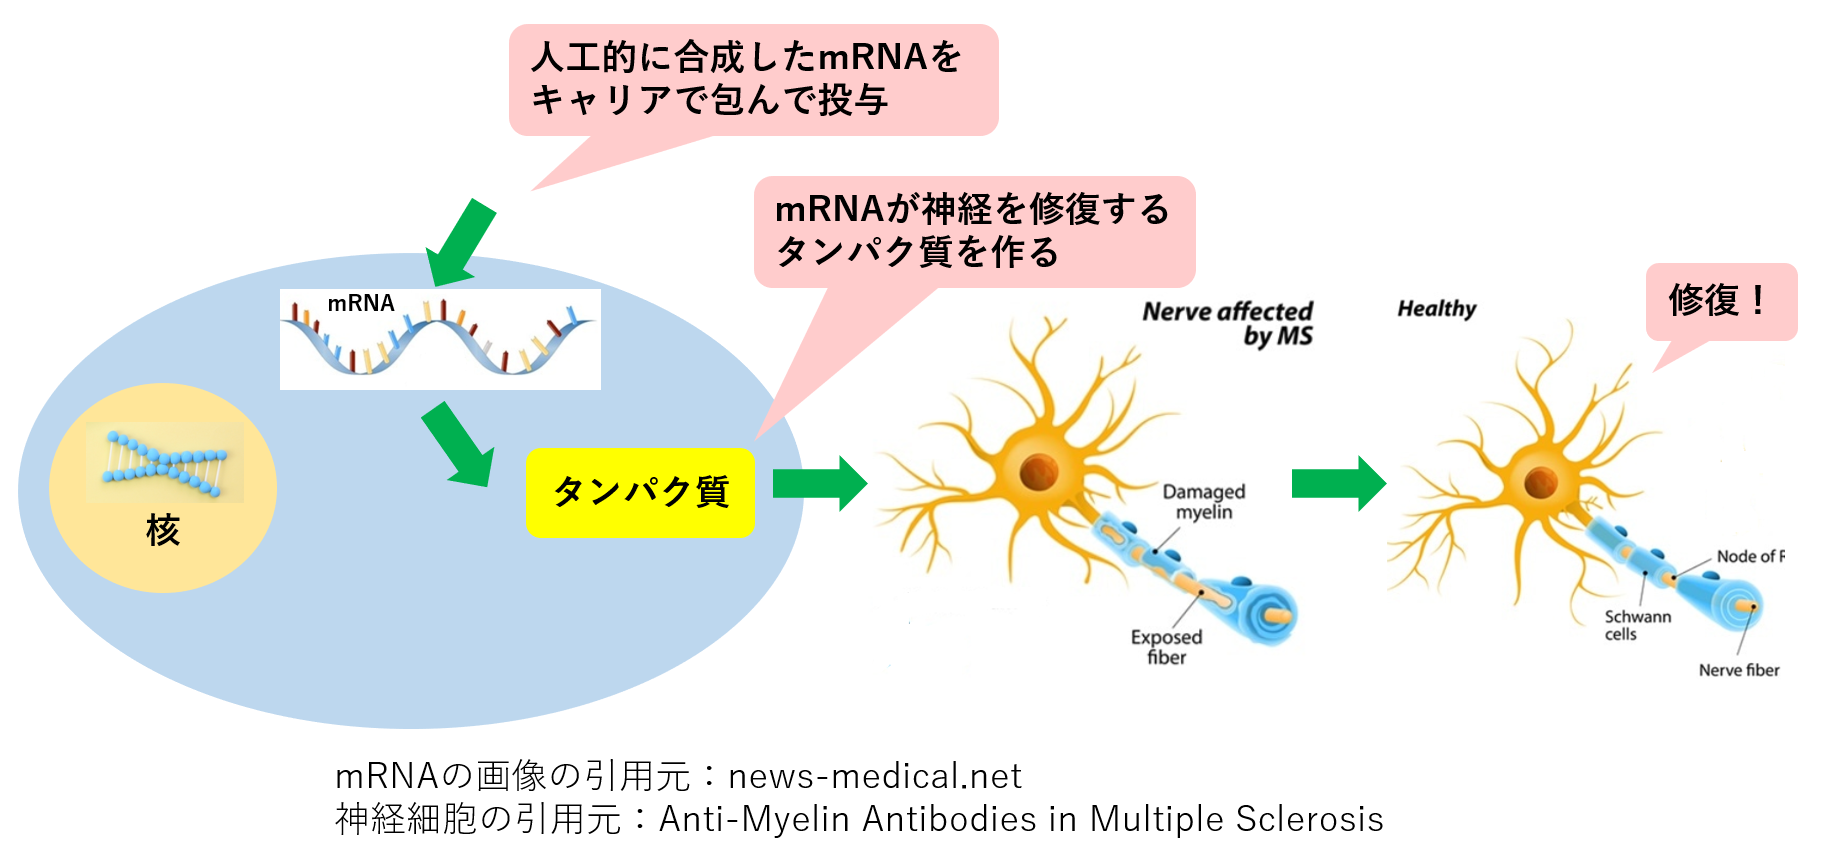 世界初 Mrna医薬により脊髄損傷マウスの運動機能が回復 神経再生医療に光 Ayumi Media 生き抜く子供を育てたい